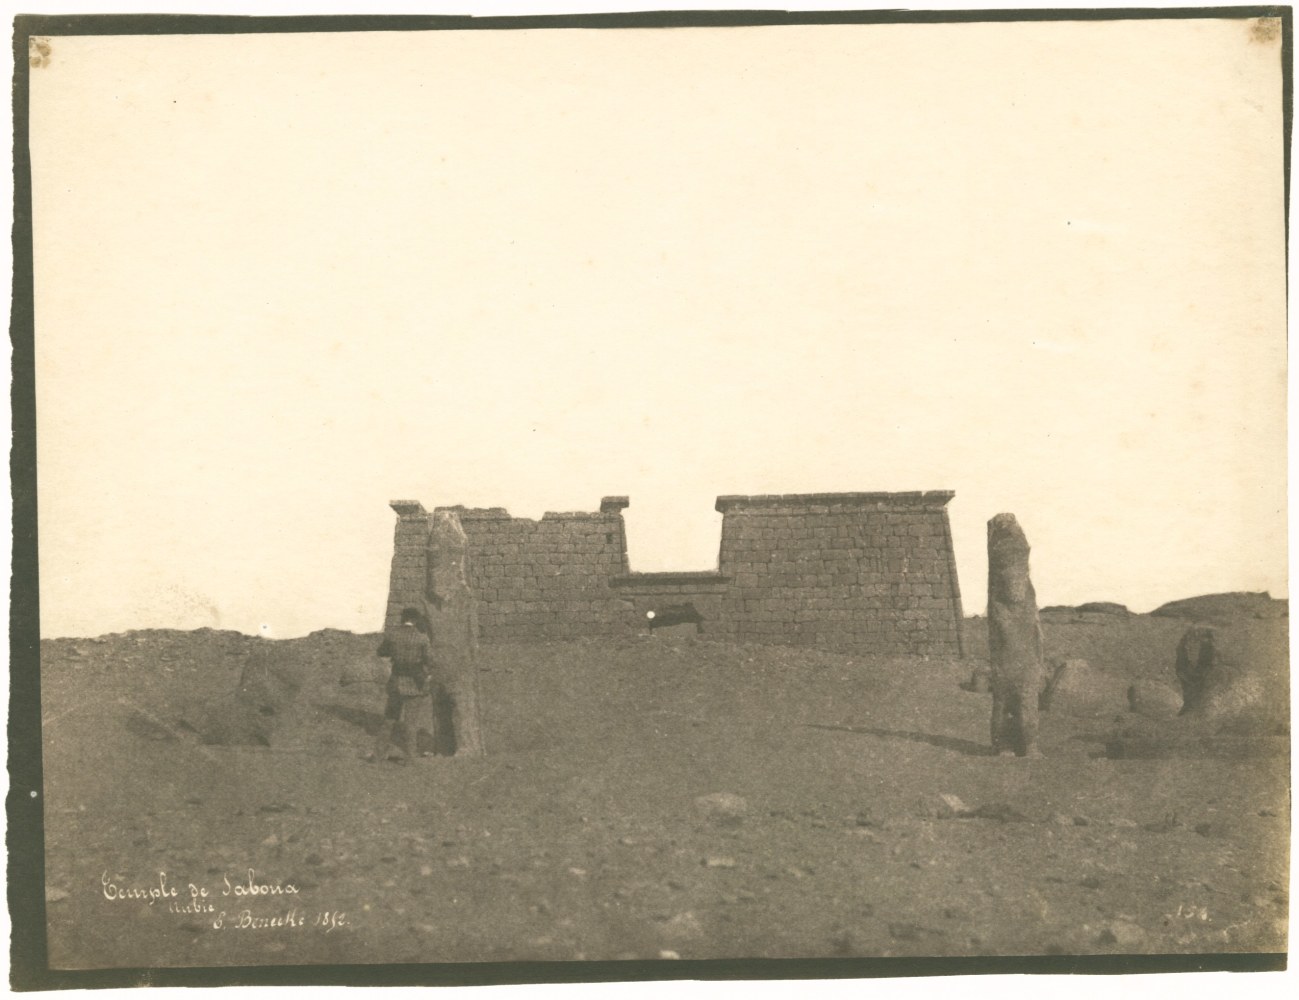 Ernest Benecke (English, 1817-1894) &quot;Temple de Saboua, Nubie&quot;, 1852, Salt print from a paper negative, 16.1 x 21.7 cm on 16.8 x 22.1 cm paper